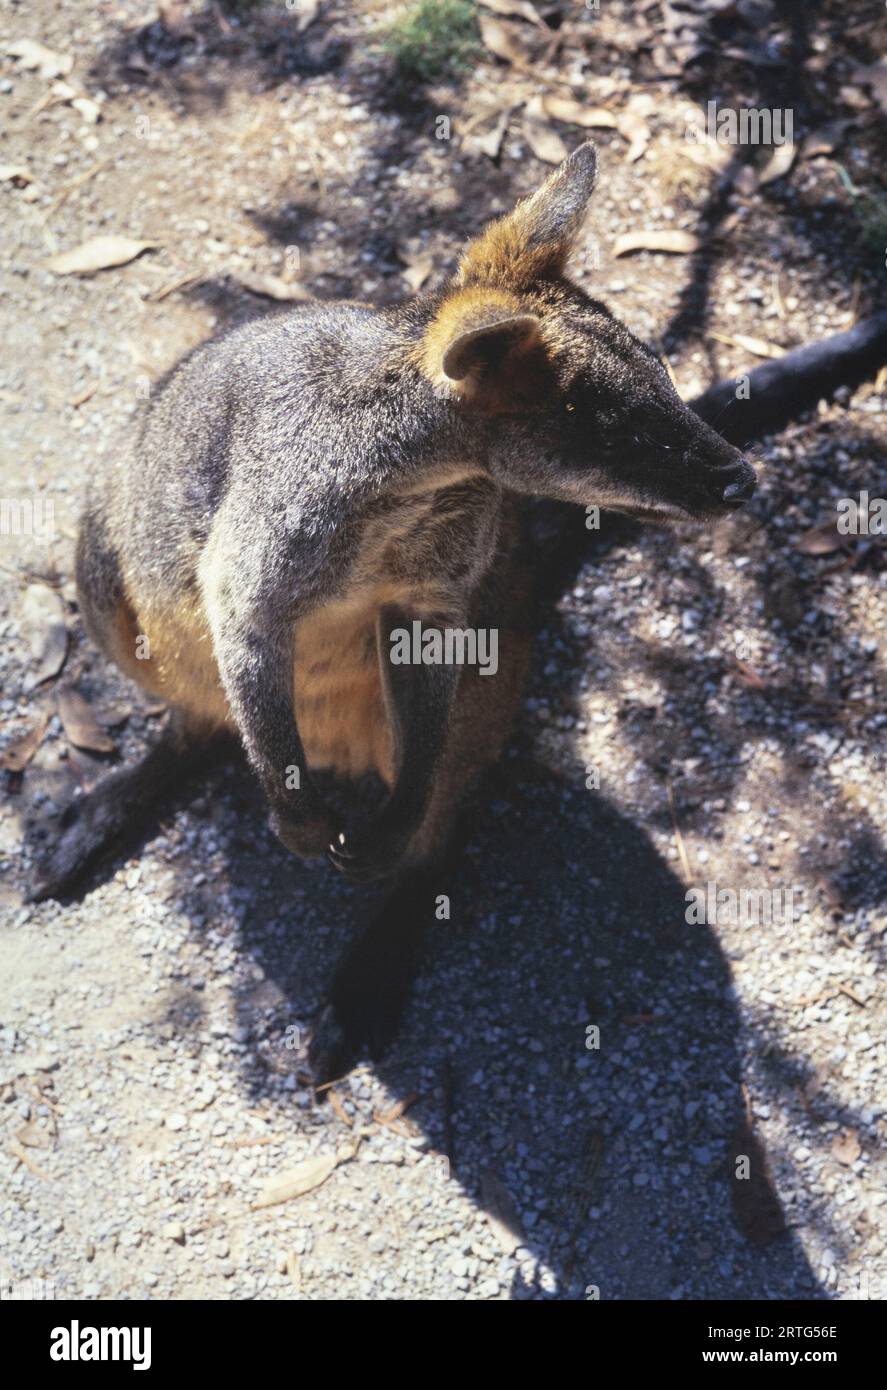 Melbourne, Australien Dezember 1999: Eine ehrliche Gefangennahme eines australischen Kängurus aus den 1990er Jahren Stockfoto